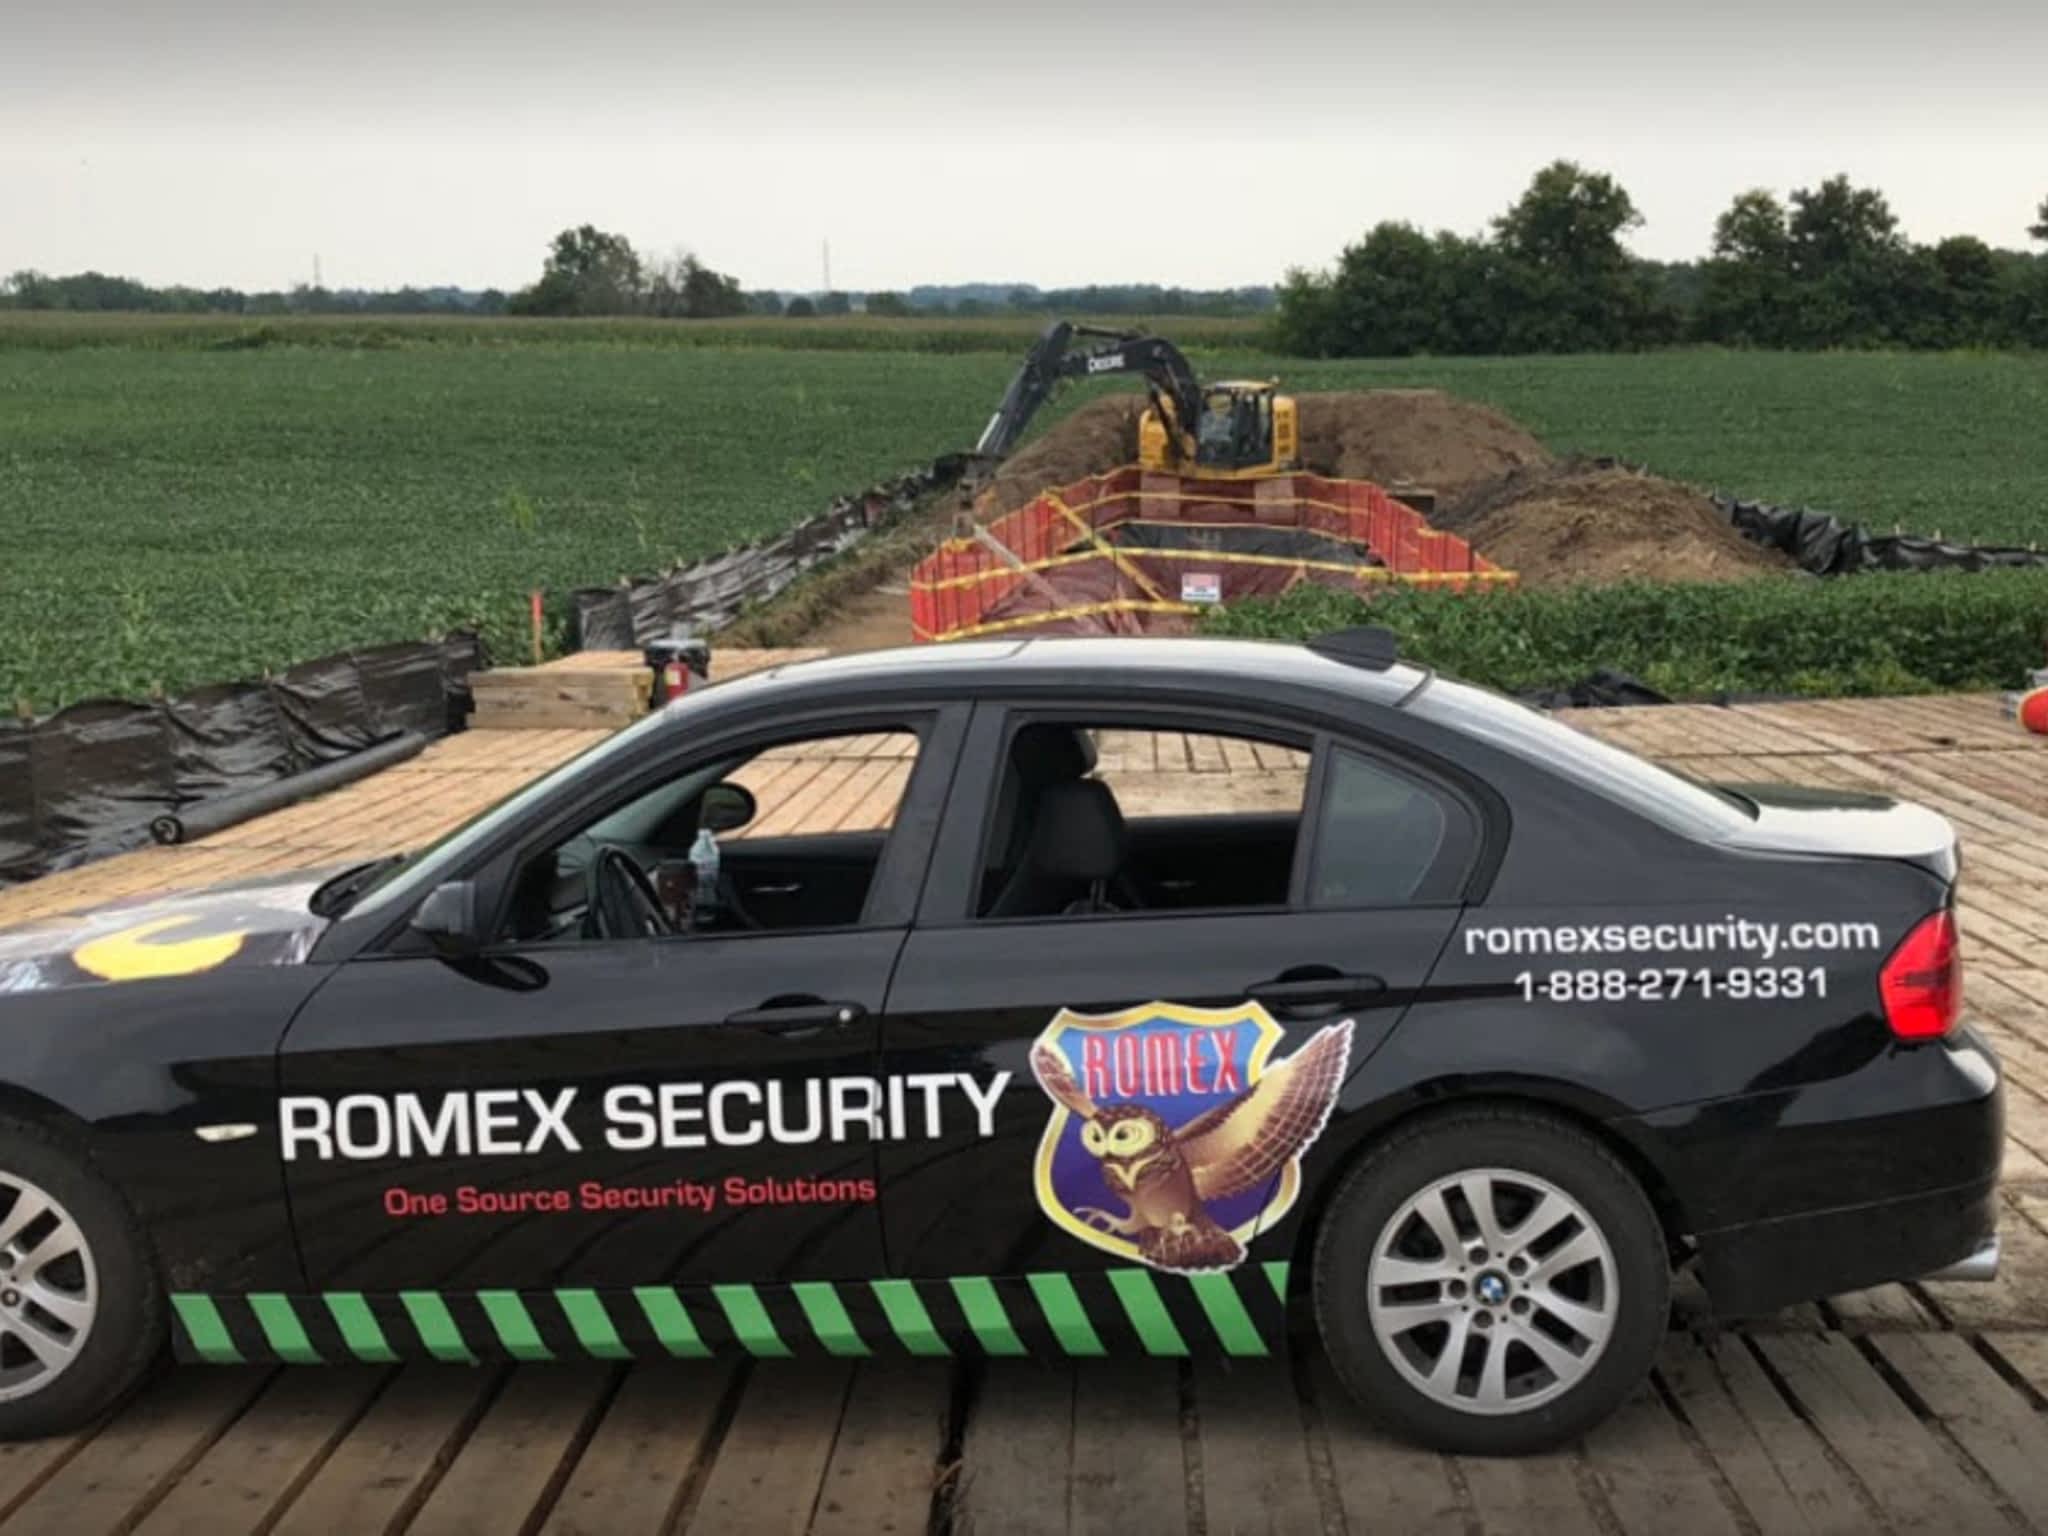 photo Romex Security